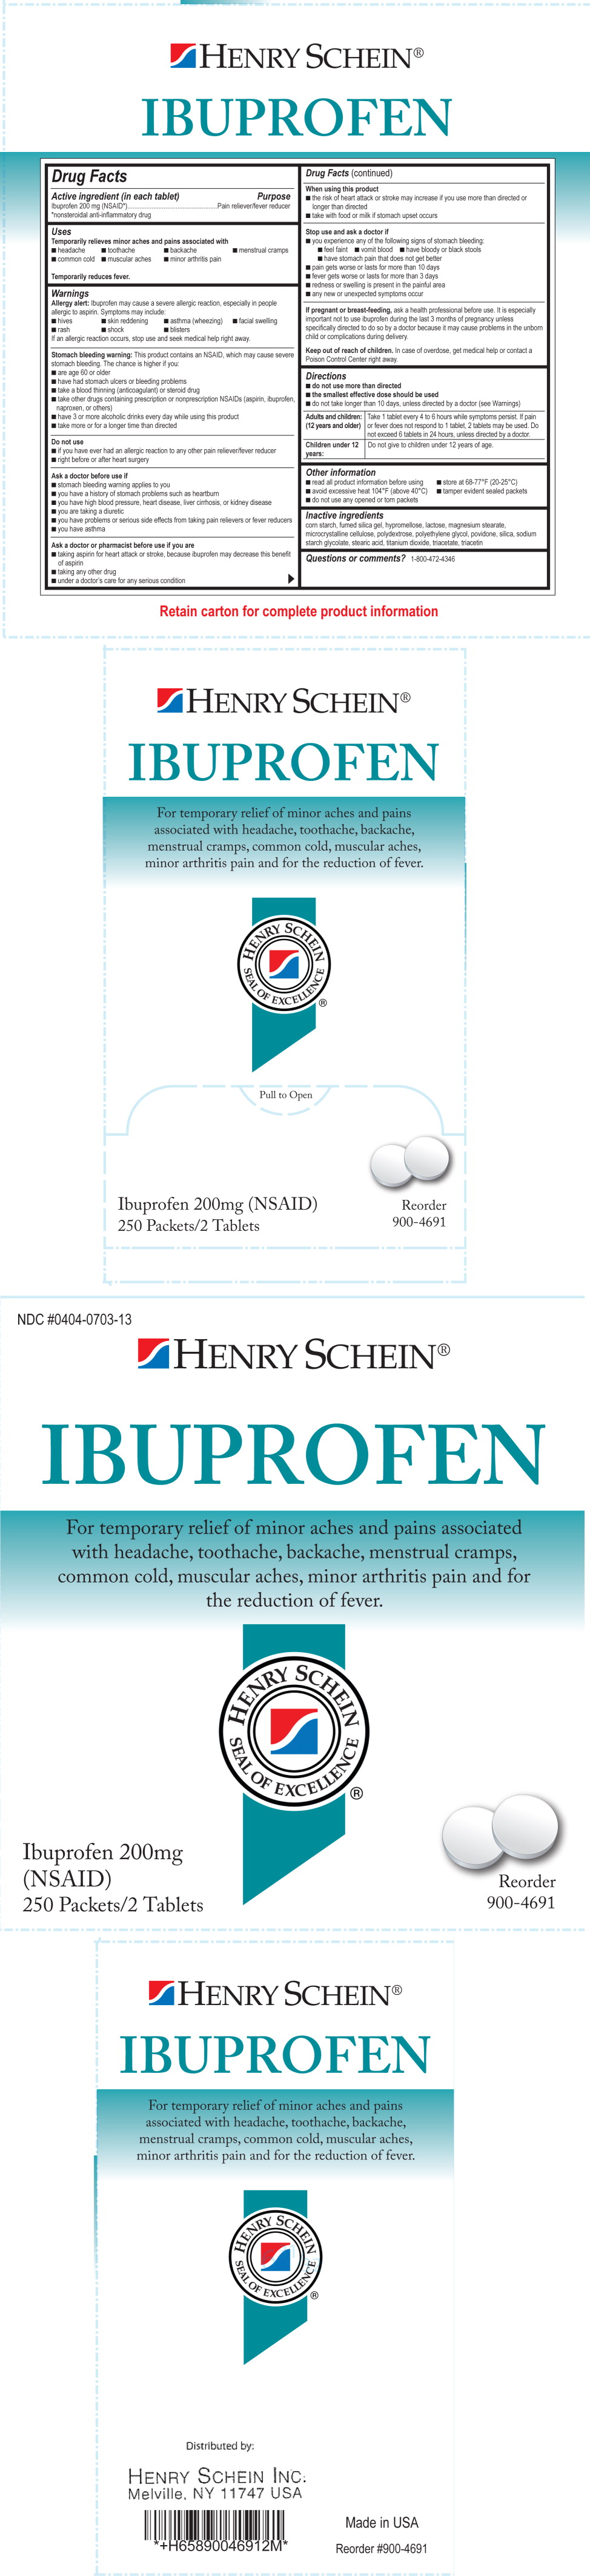 Henry Schein Ibuprofen Label
